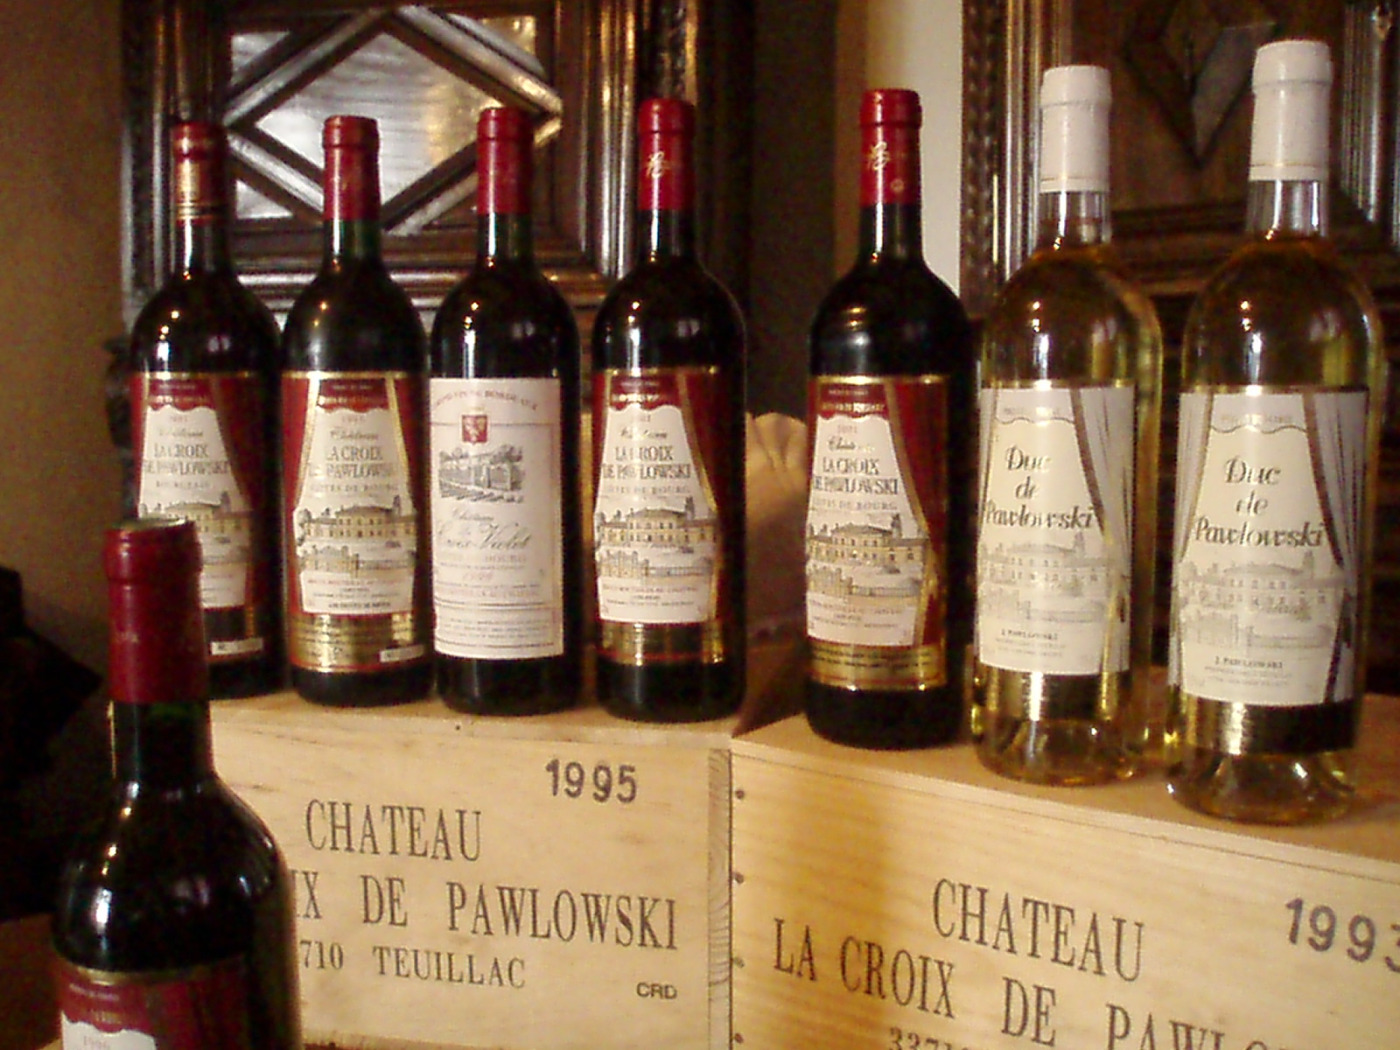 Dégustation de vins du Château la Croix de Pawlowski samedi 27 avril